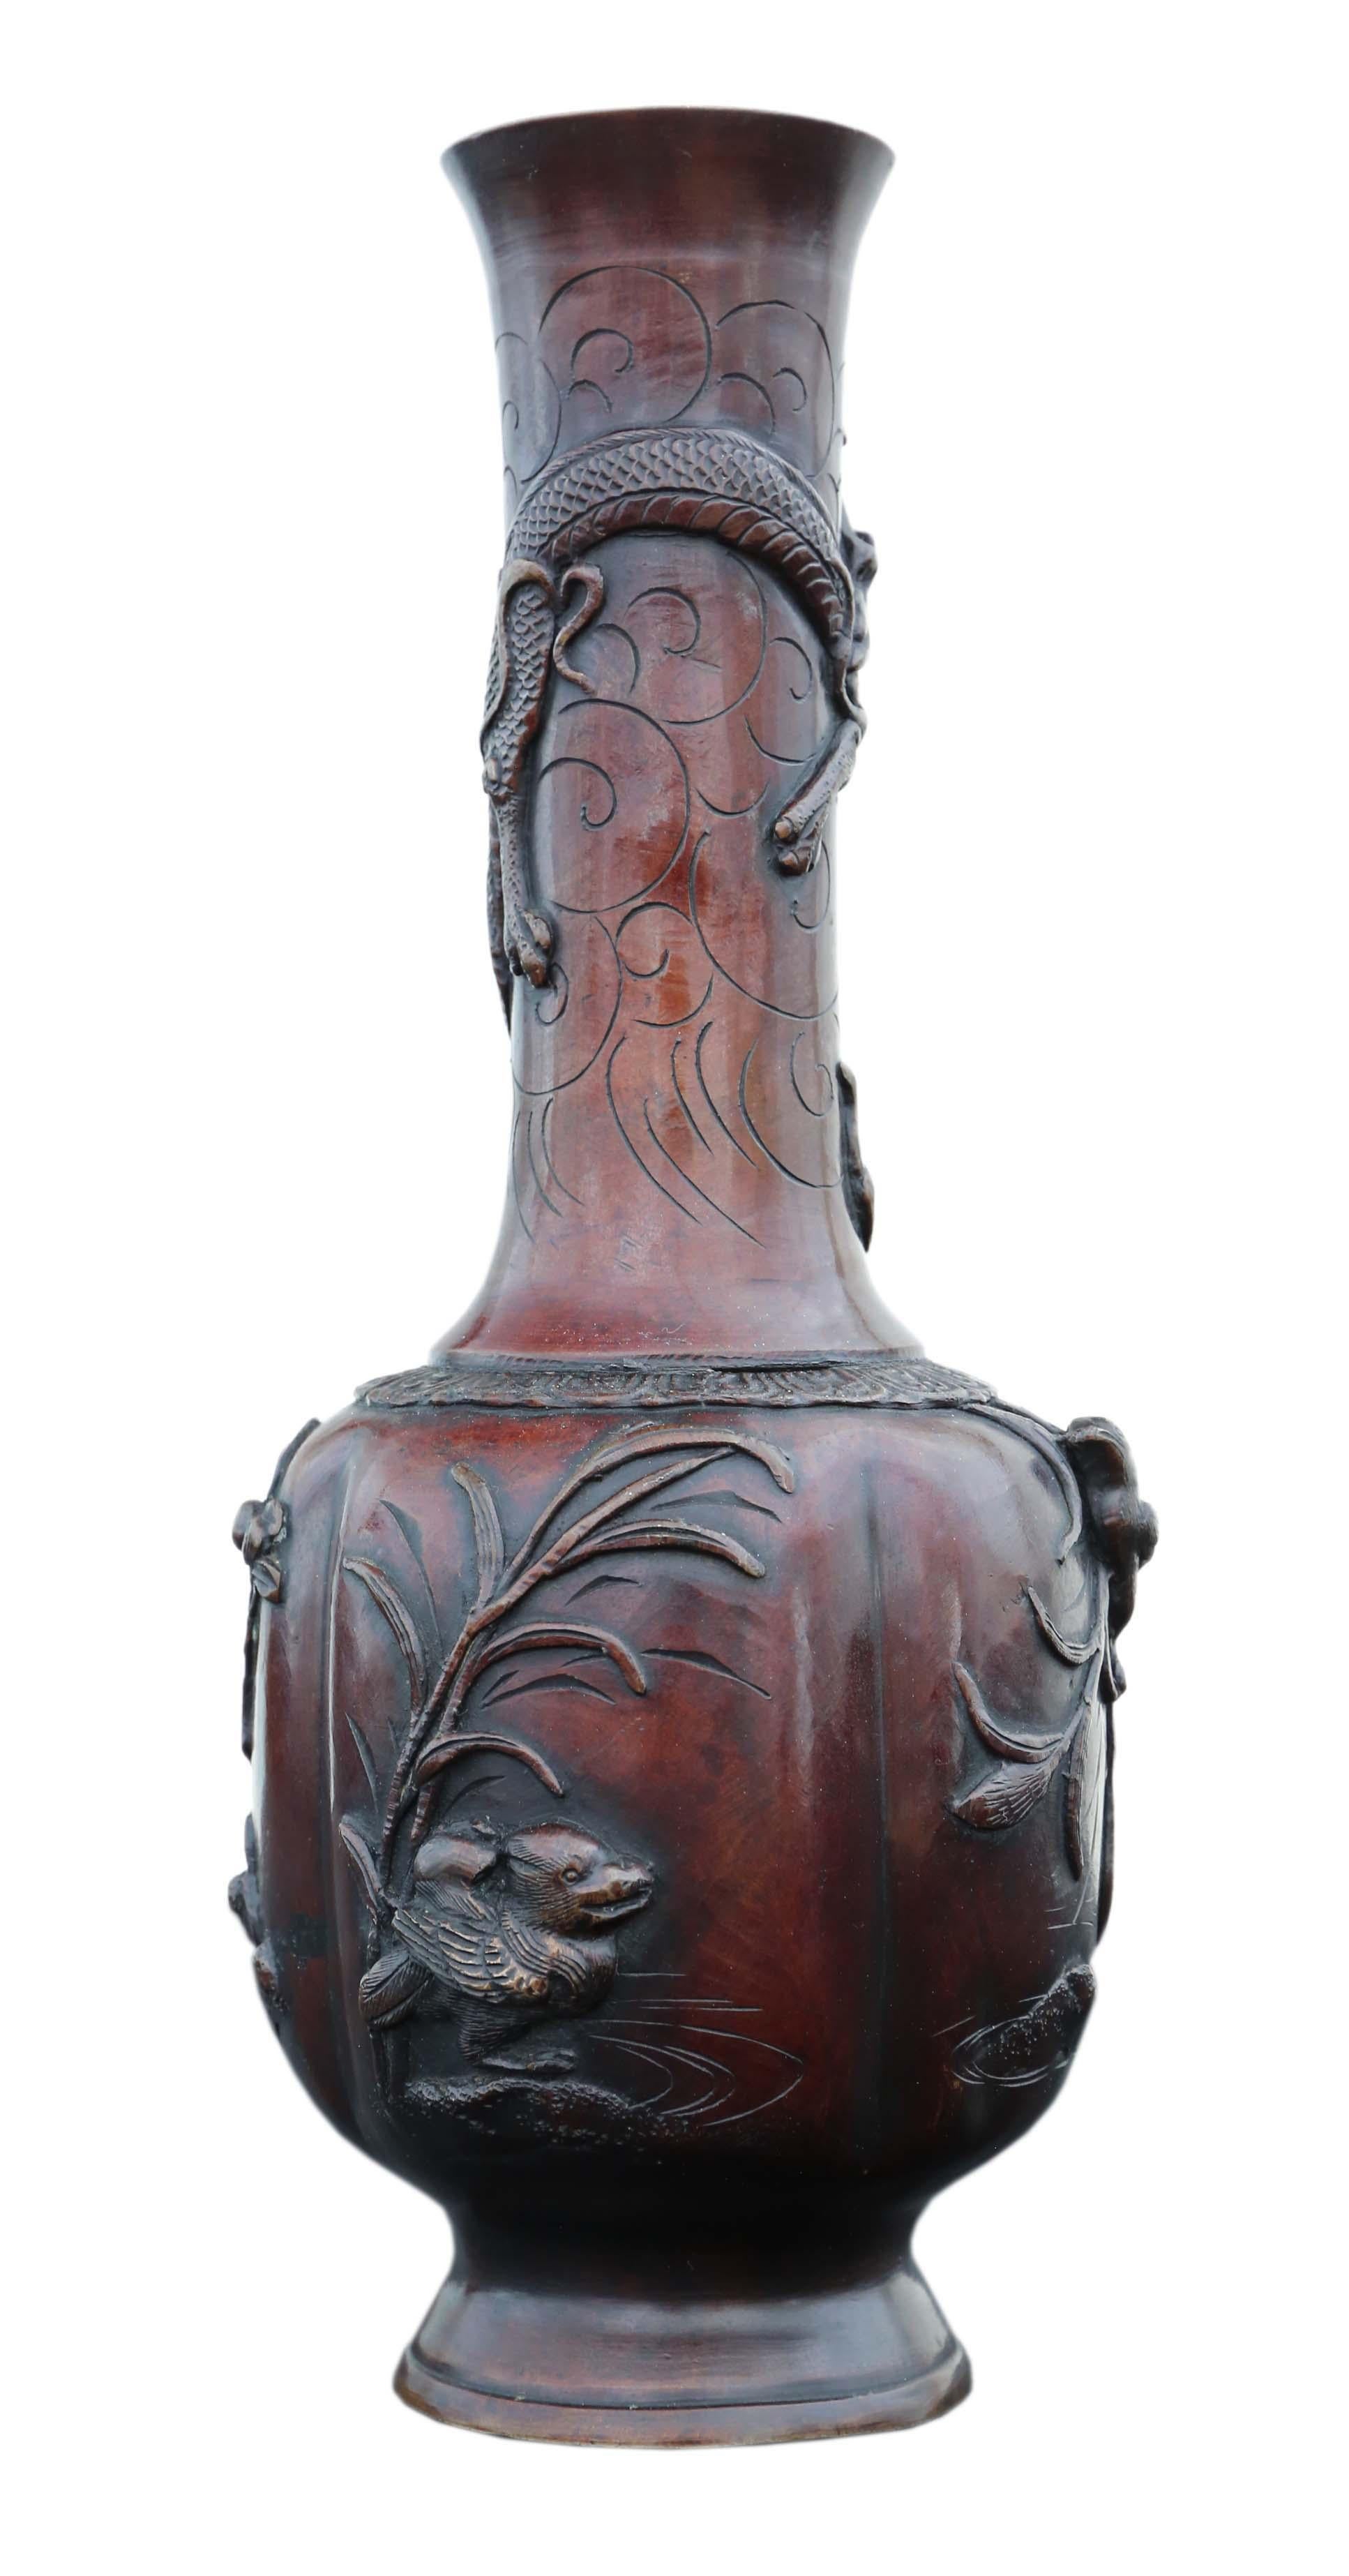 Vase japonais en bronze de la période Meiji.
Il serait magnifique au bon endroit. La meilleure couleur et la meilleure patine.
Dimensions totales maximales : 31 cm de haut x 14 cm de diamètre (bouche intérieure de 4,5 cm de diamètre). Poids : 1,5